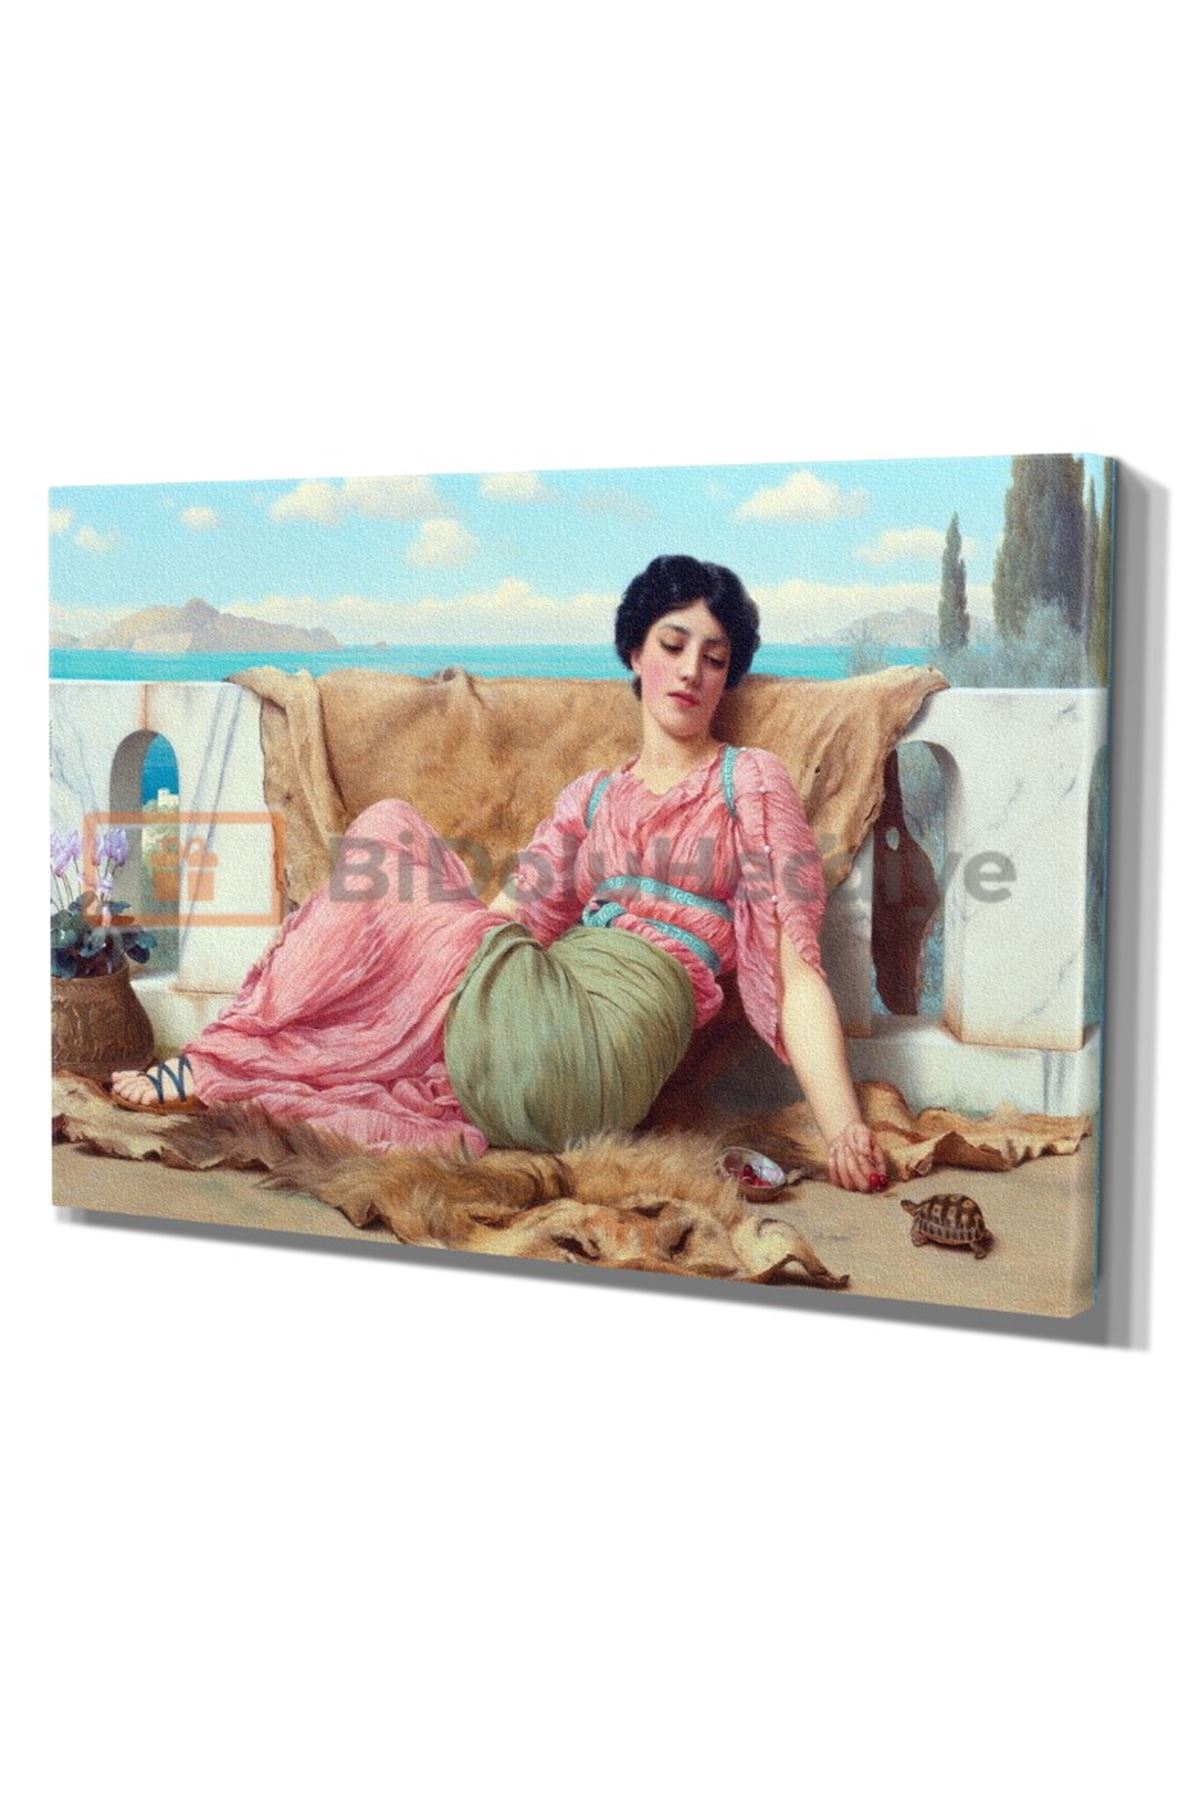 JOSEPH HARRİSON Yağlı Boya Görünümlü Kadın ve Manzara Kanvas Tablo